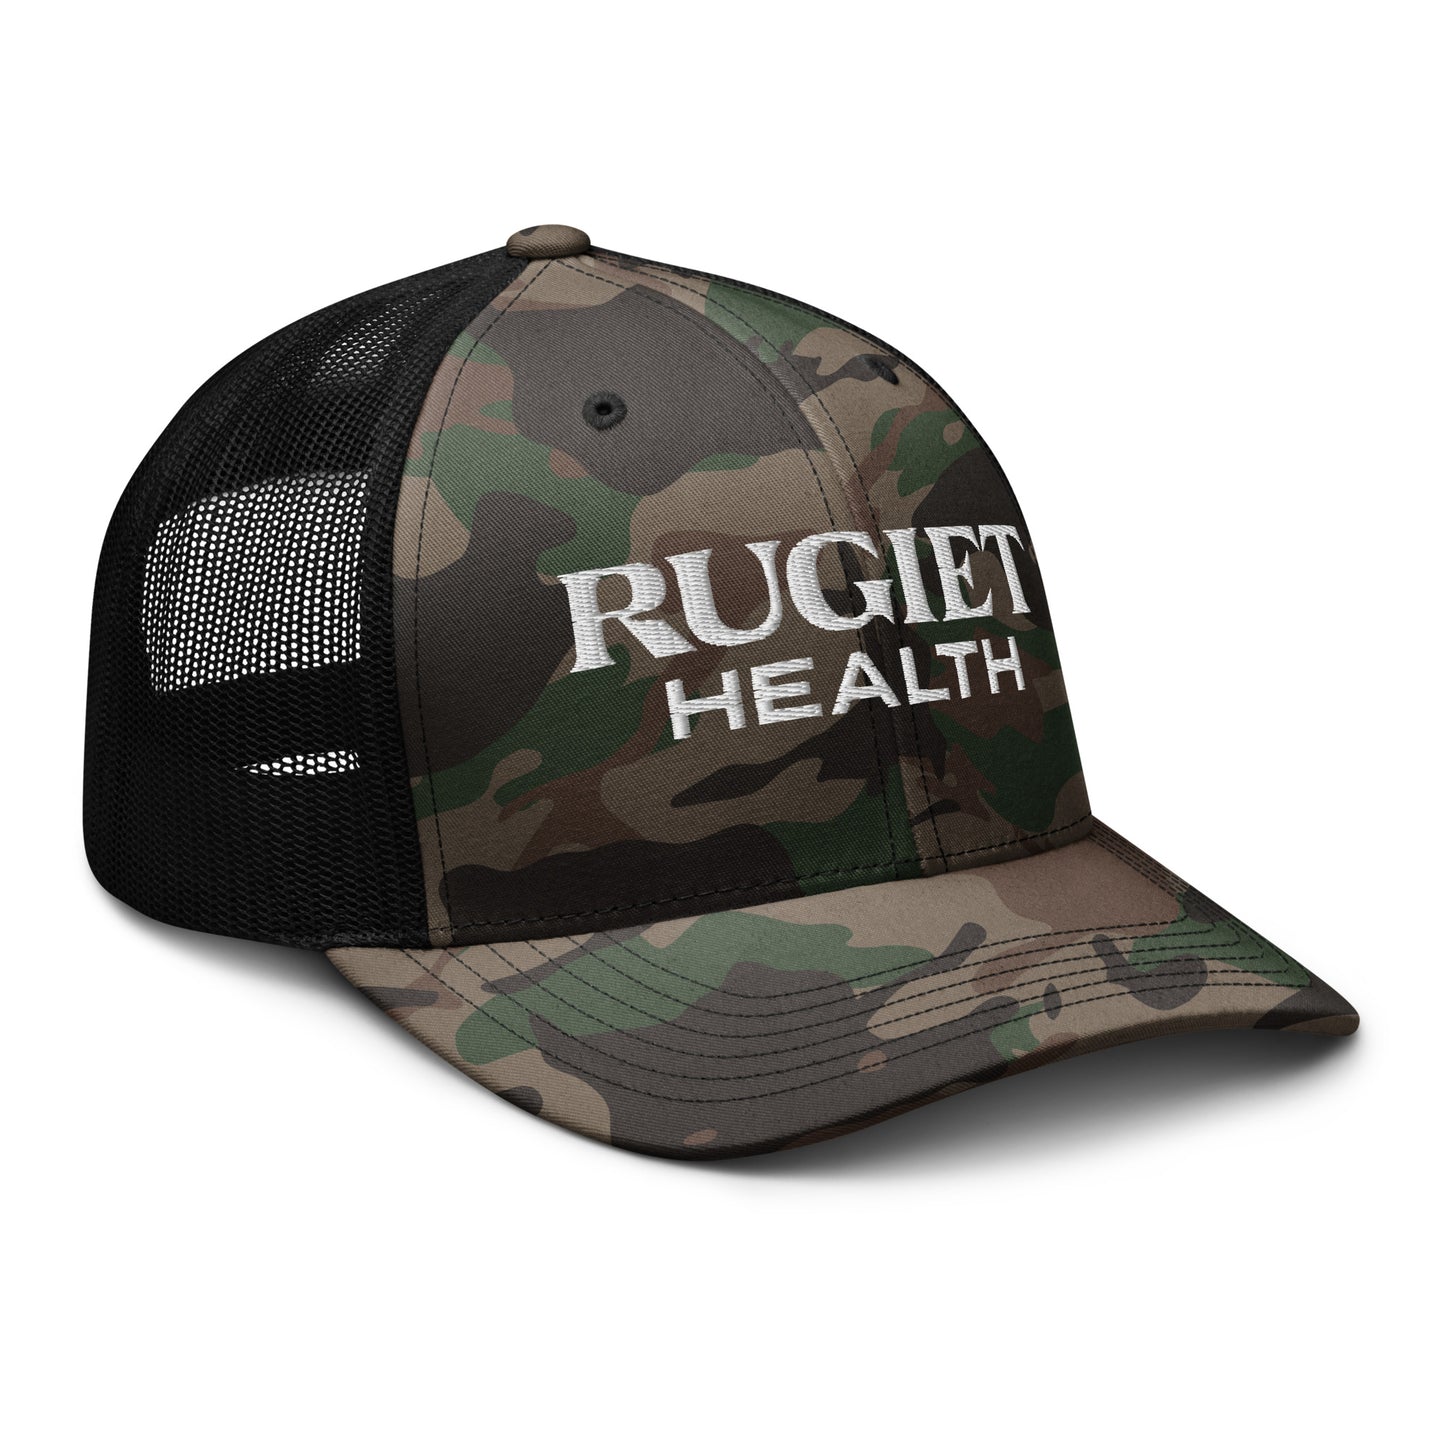 Camouflage trucker hat - Rugiet Health